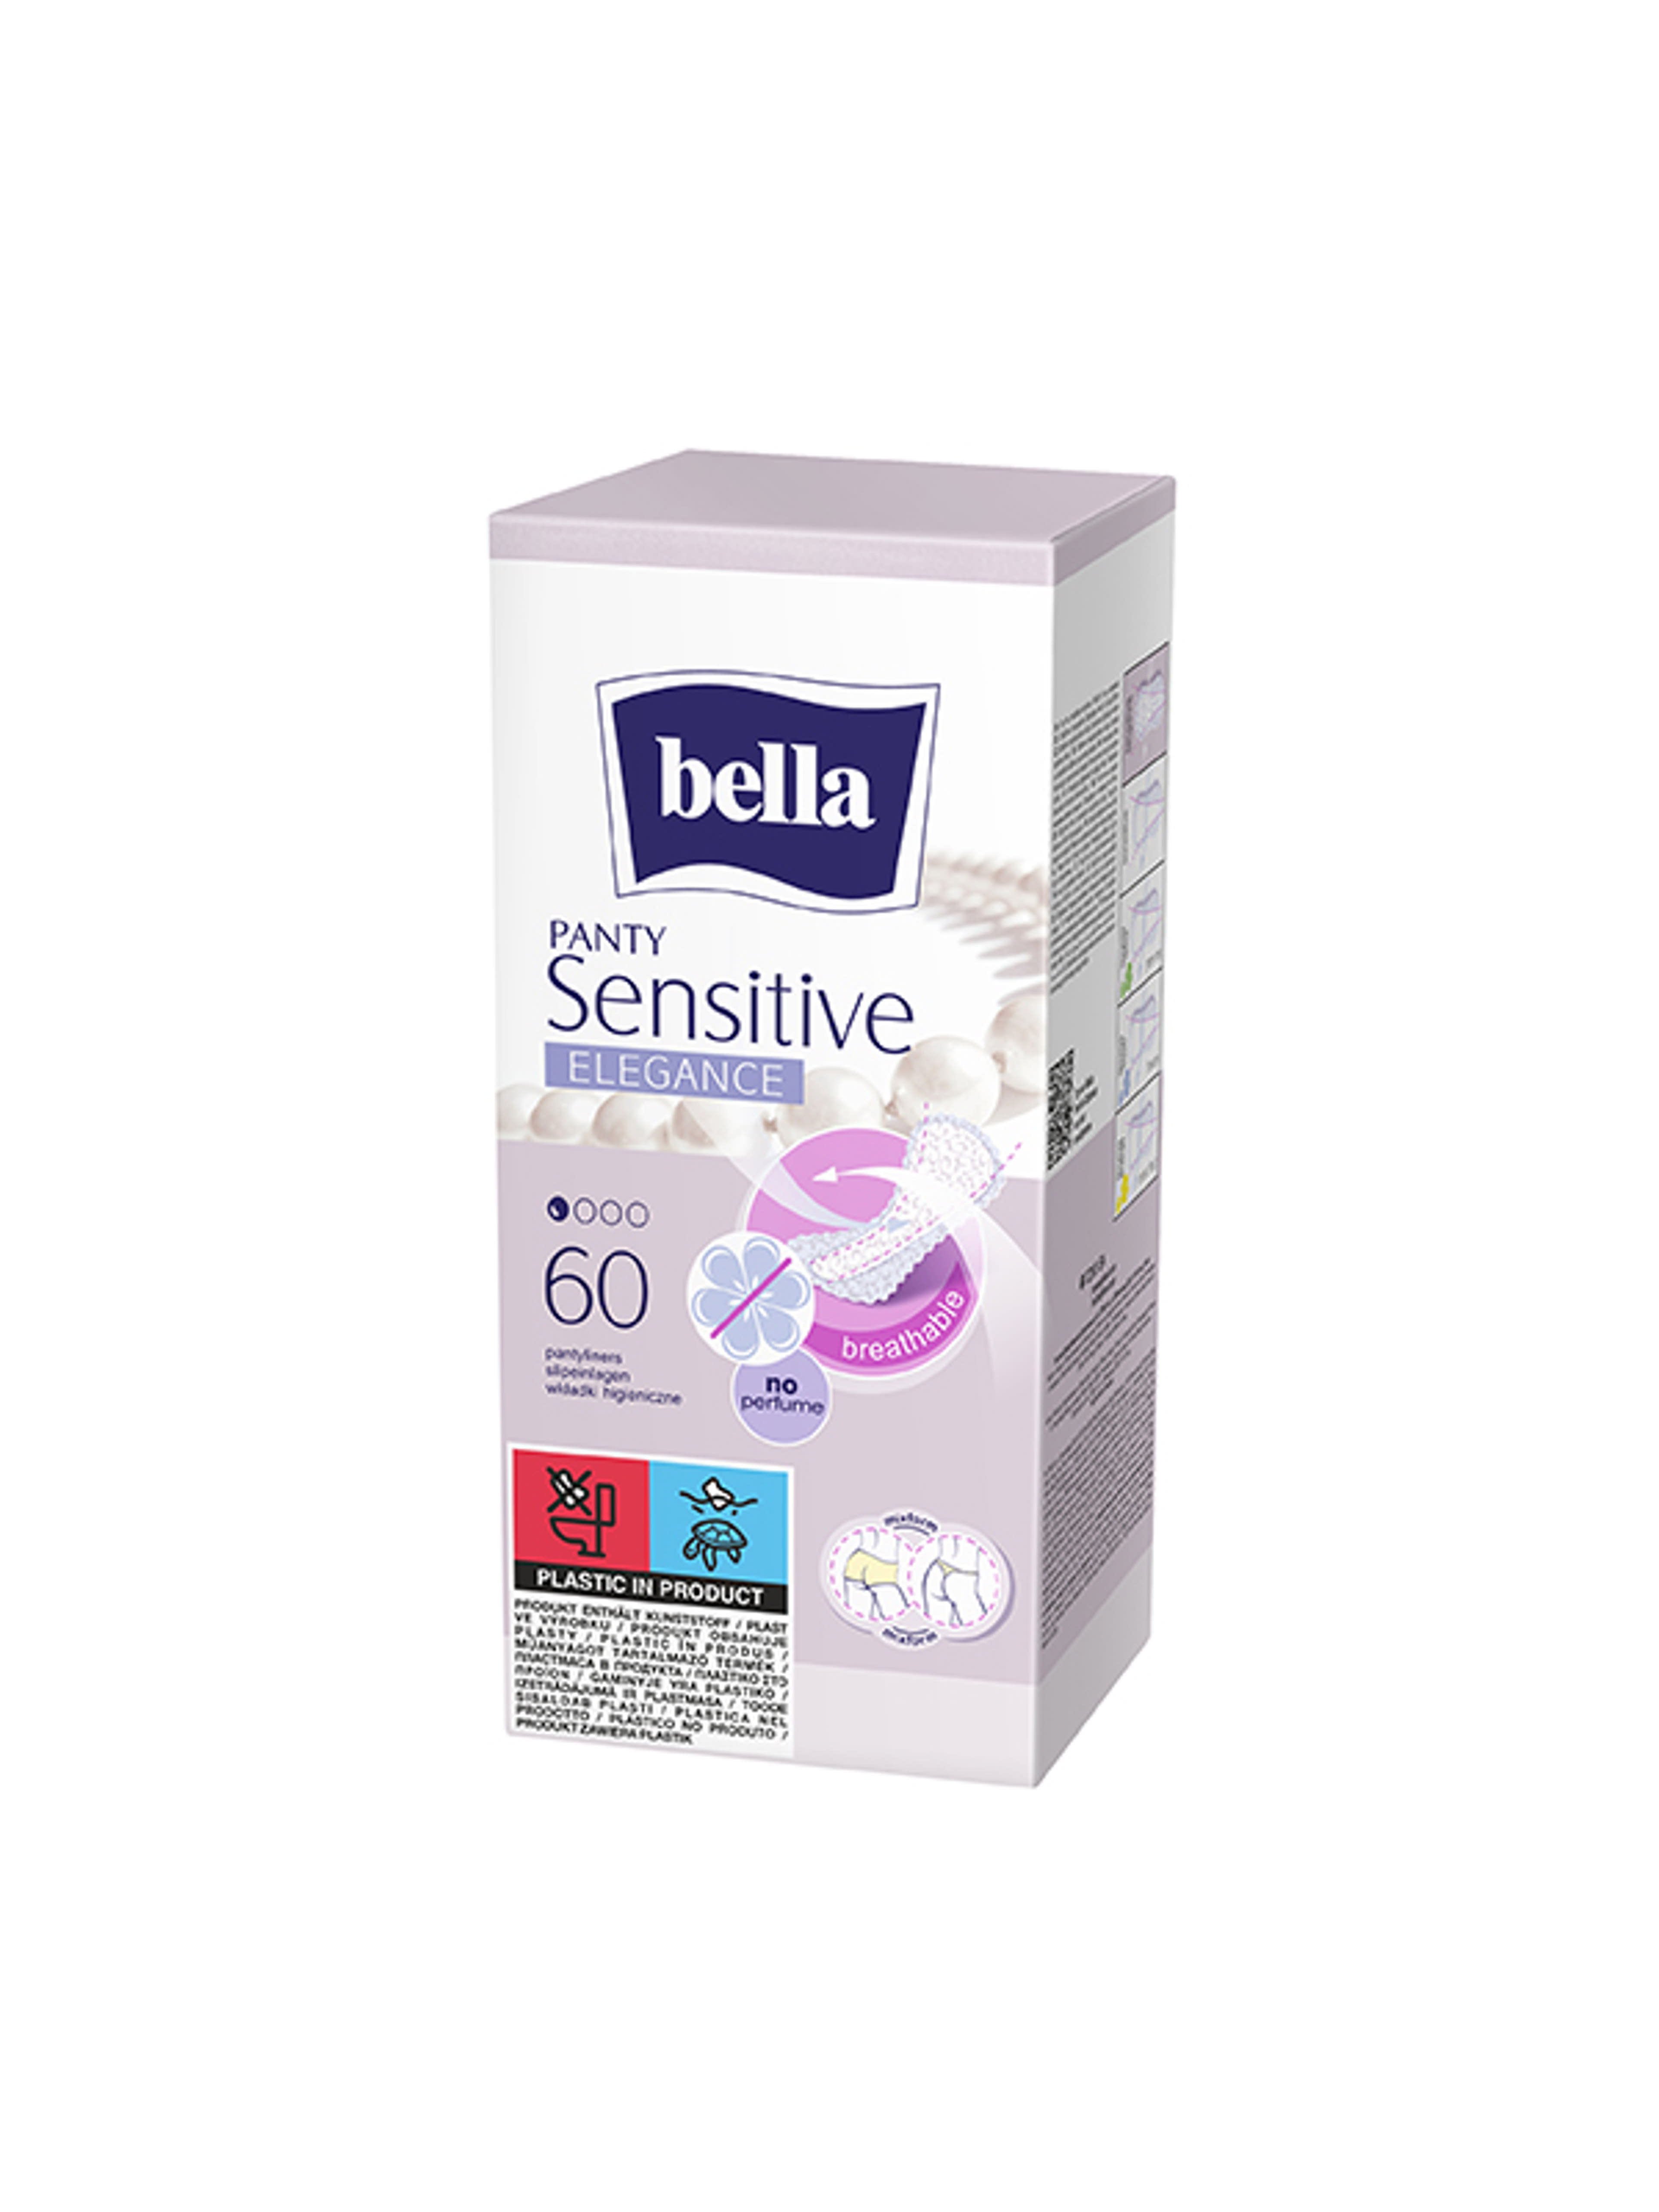 Bella Panty Sensitive Elegance tisztasági betét - 60 db-1